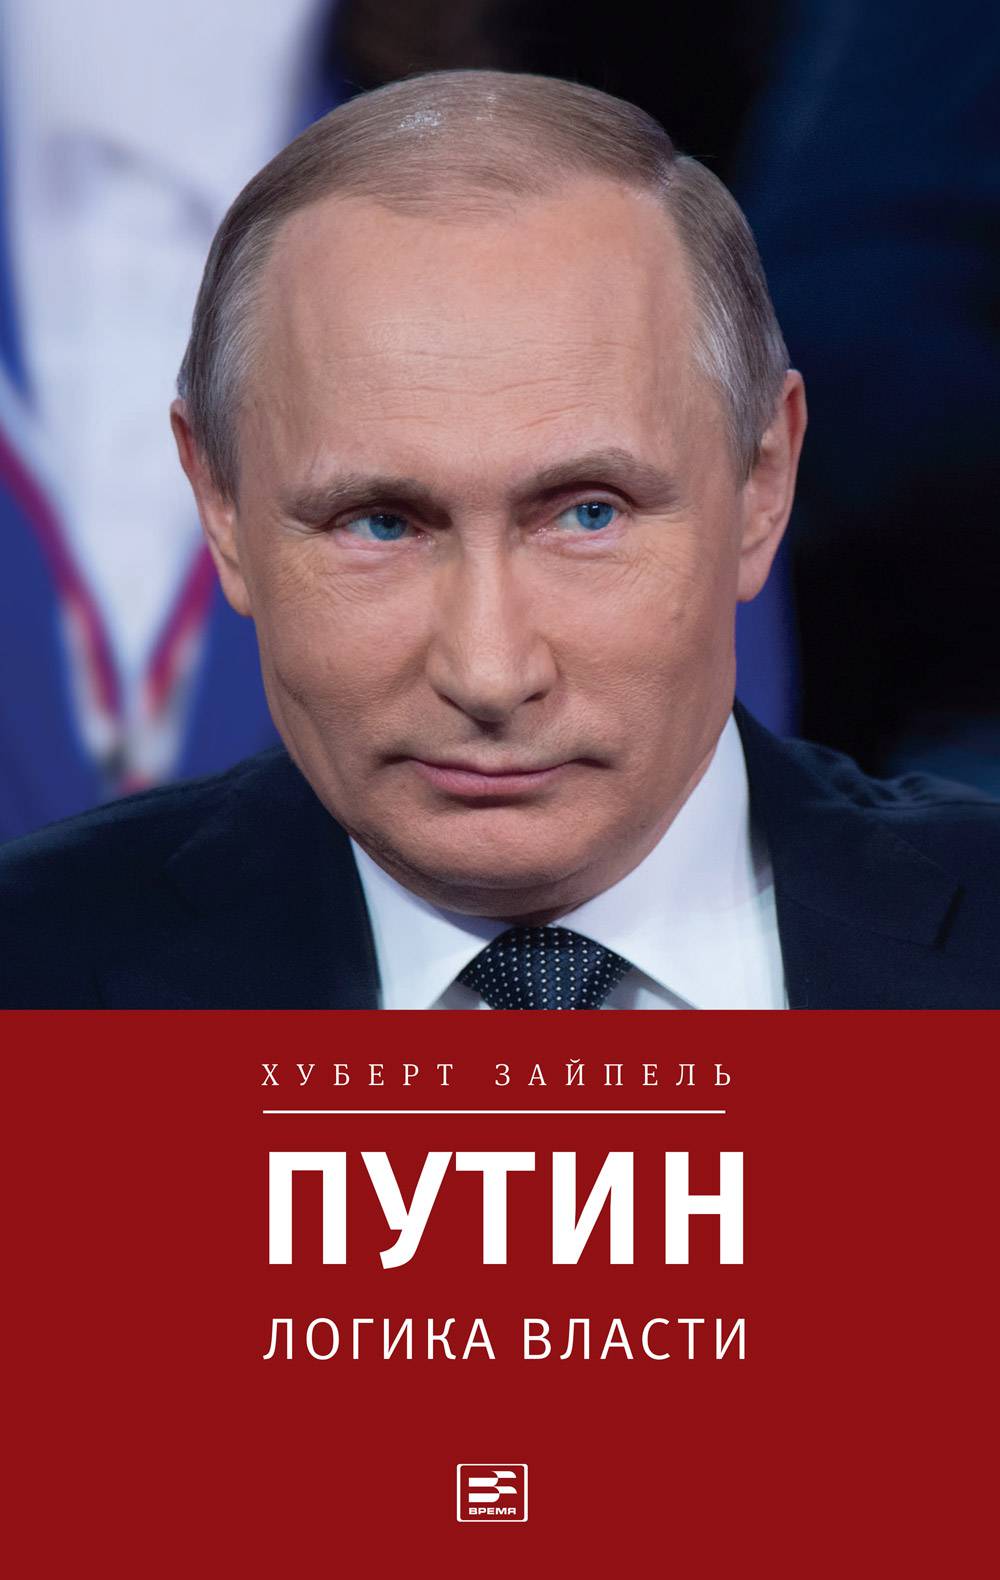 Putin Innenansichten der acht PDF Epub-Ebook